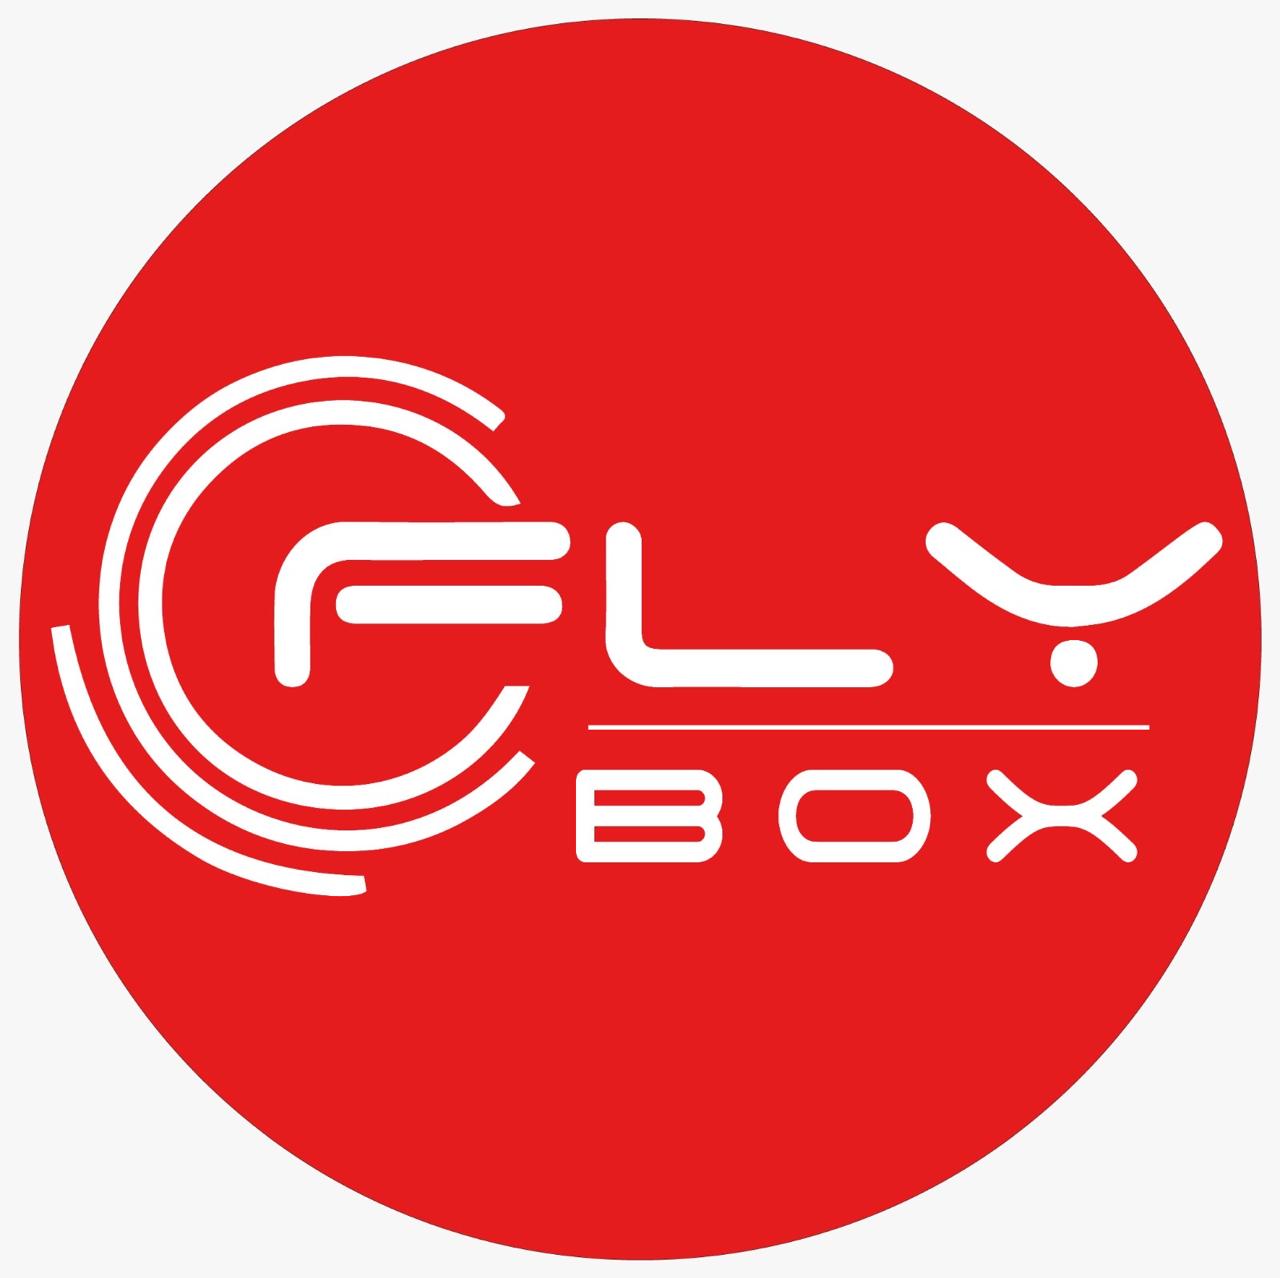 Fly Box